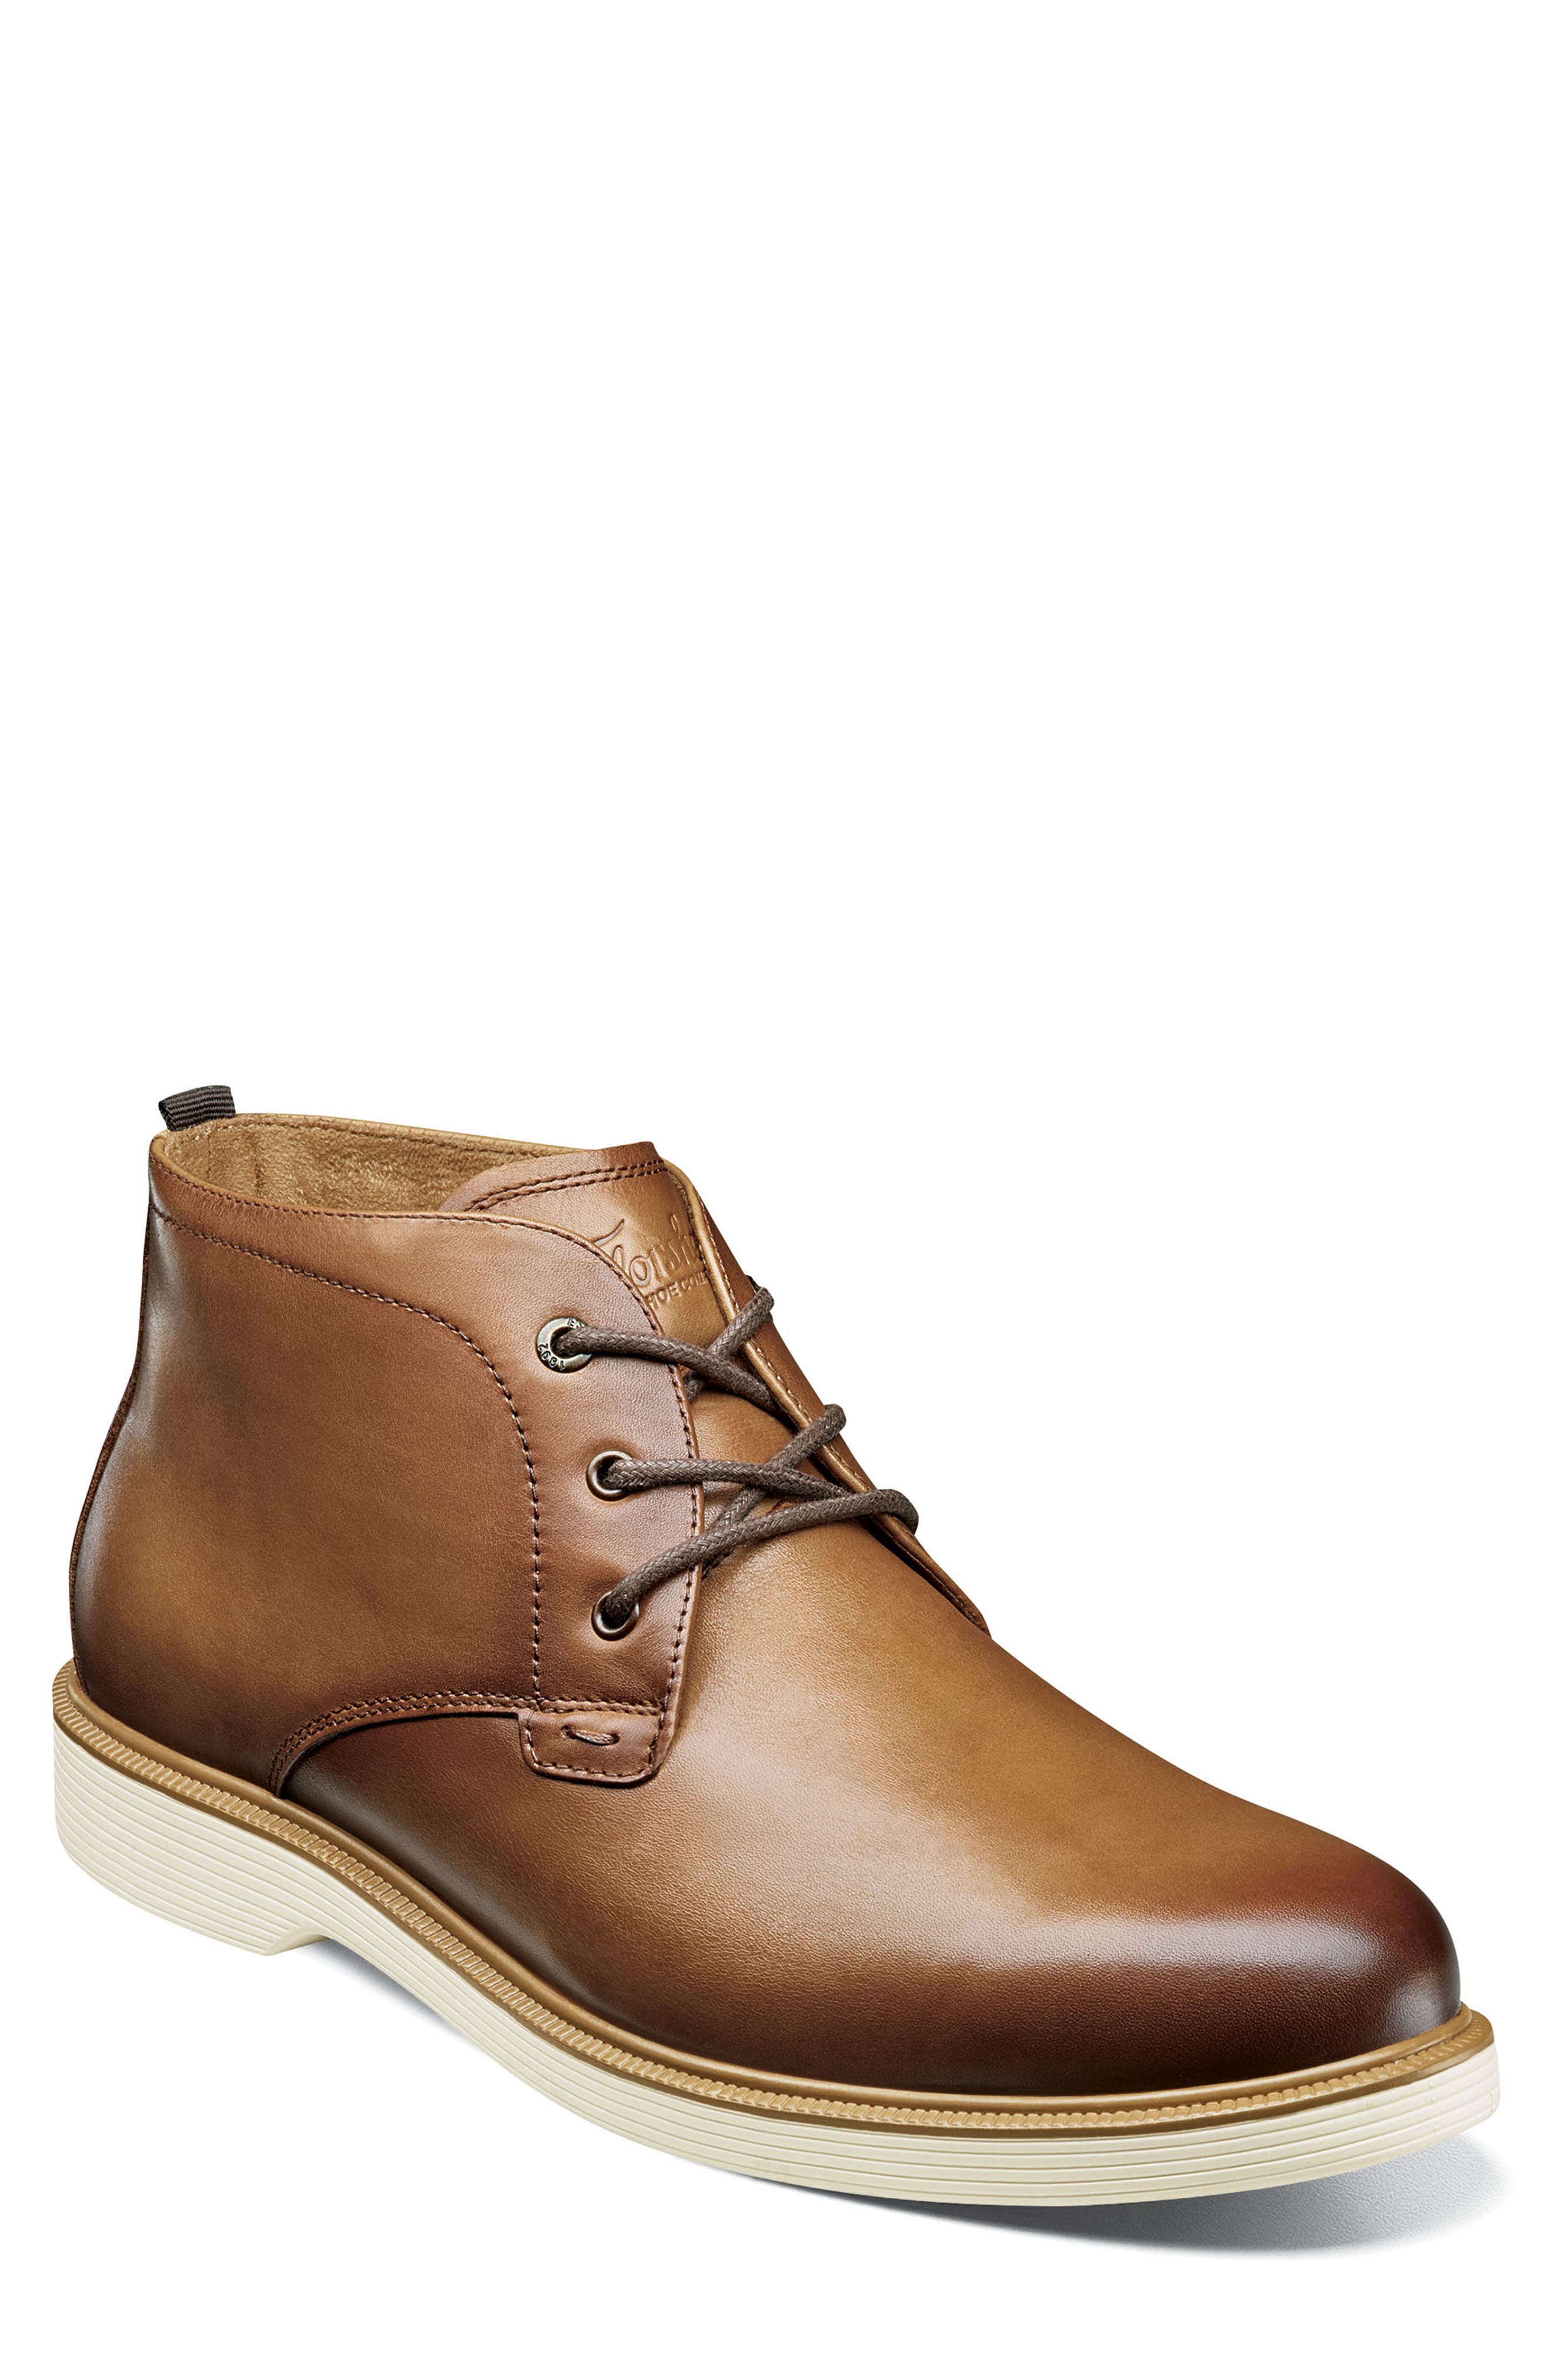 Florsheim Shoes for Men | Nordstrom Rack